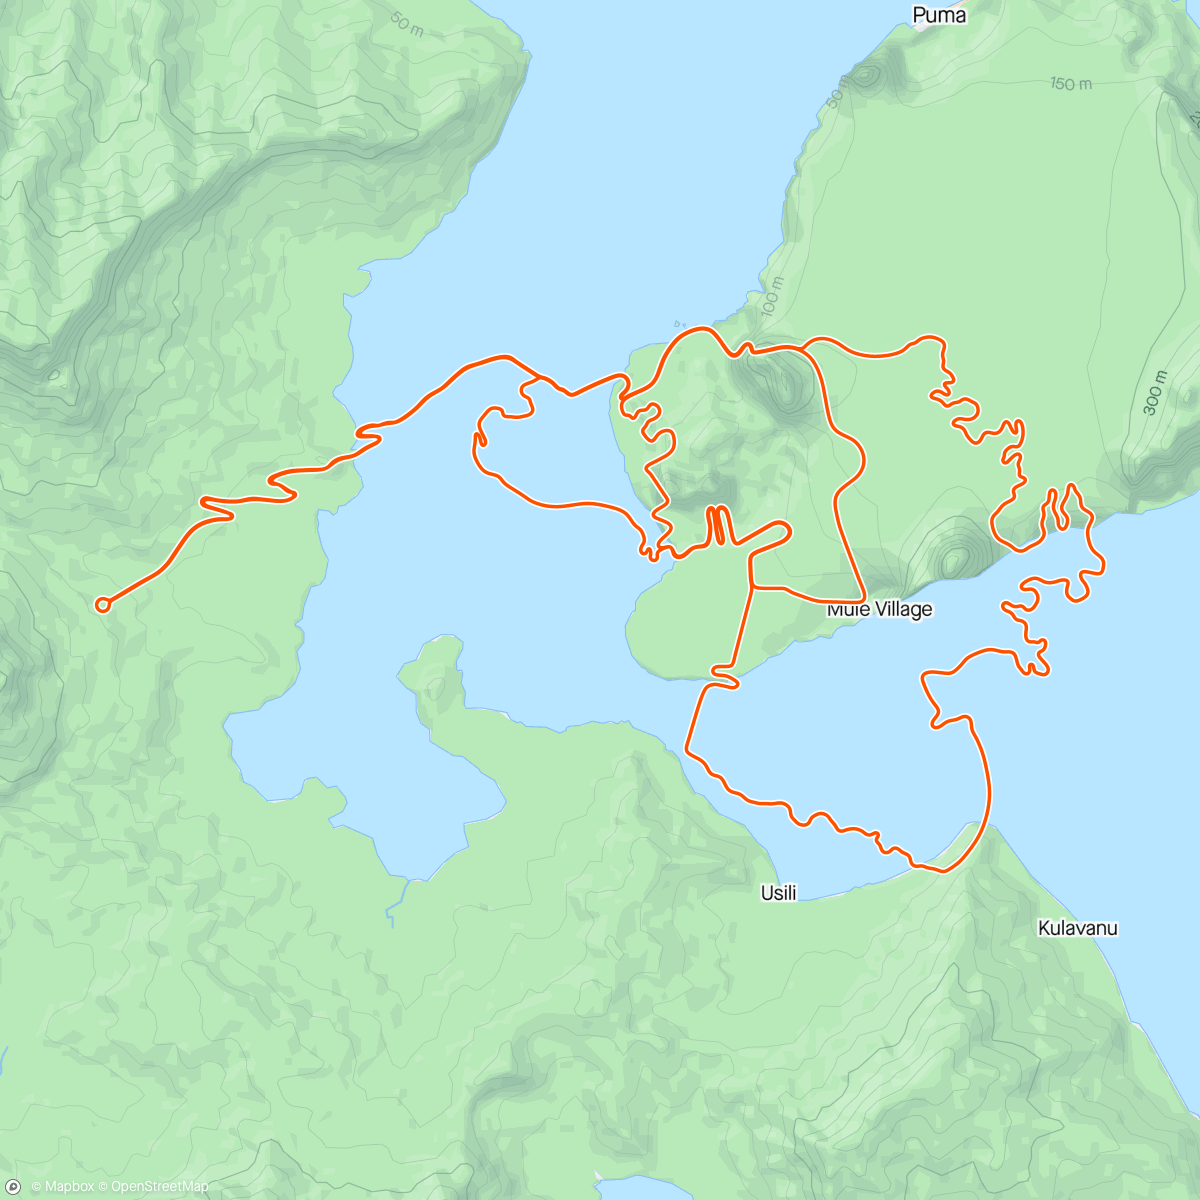 「Zwift - Climb Portal: Col des Aravis at 100% Elevation in Watopia」活動的地圖